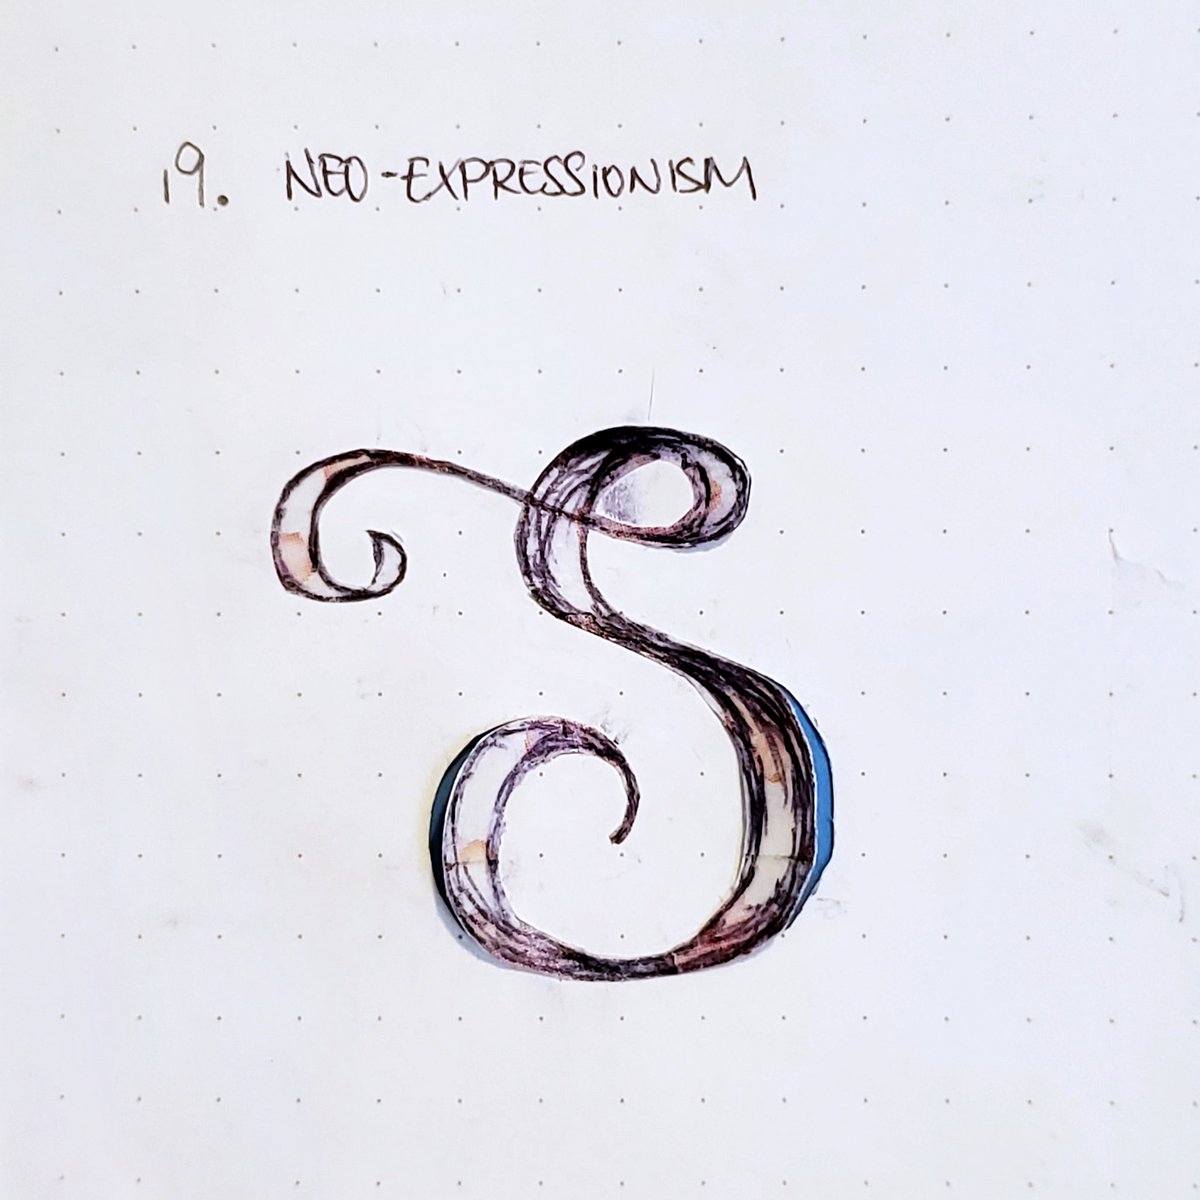 19. Neo-Expressionism ???
#36DaysOfType #36days_s